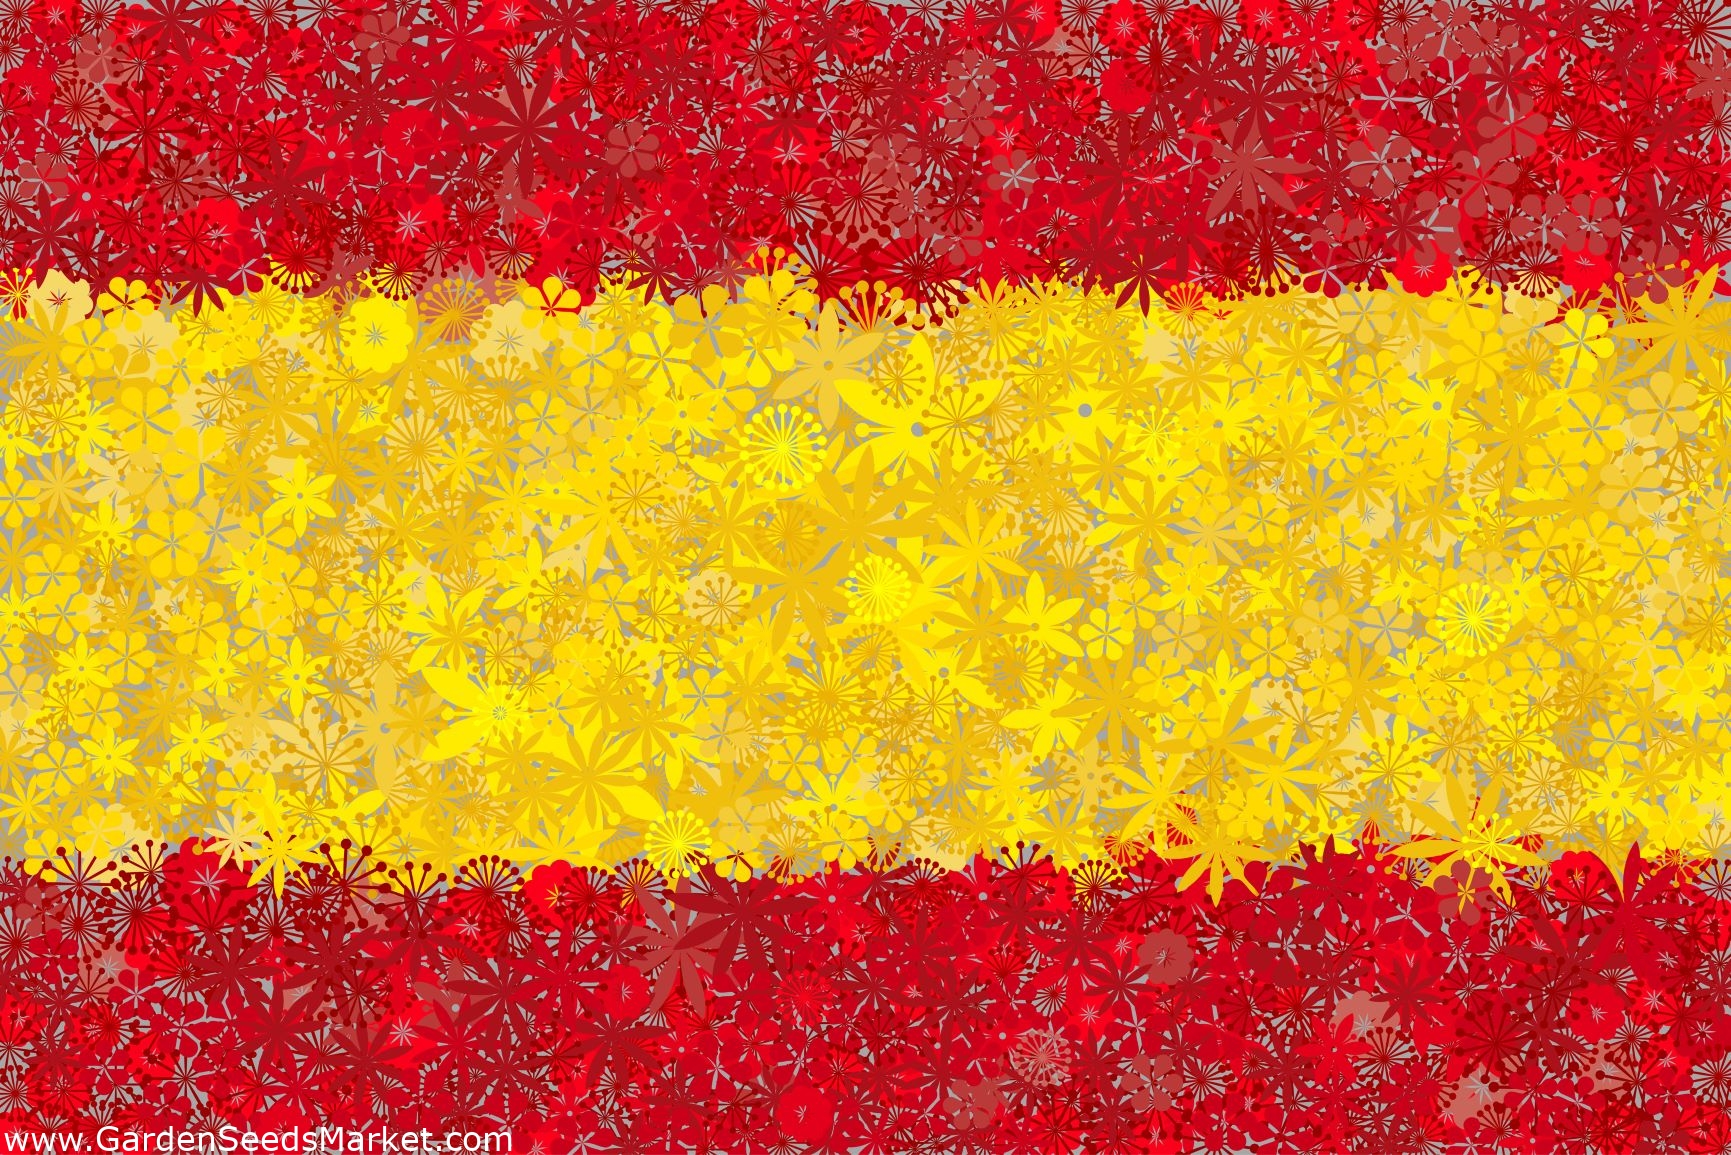 Цвета испании